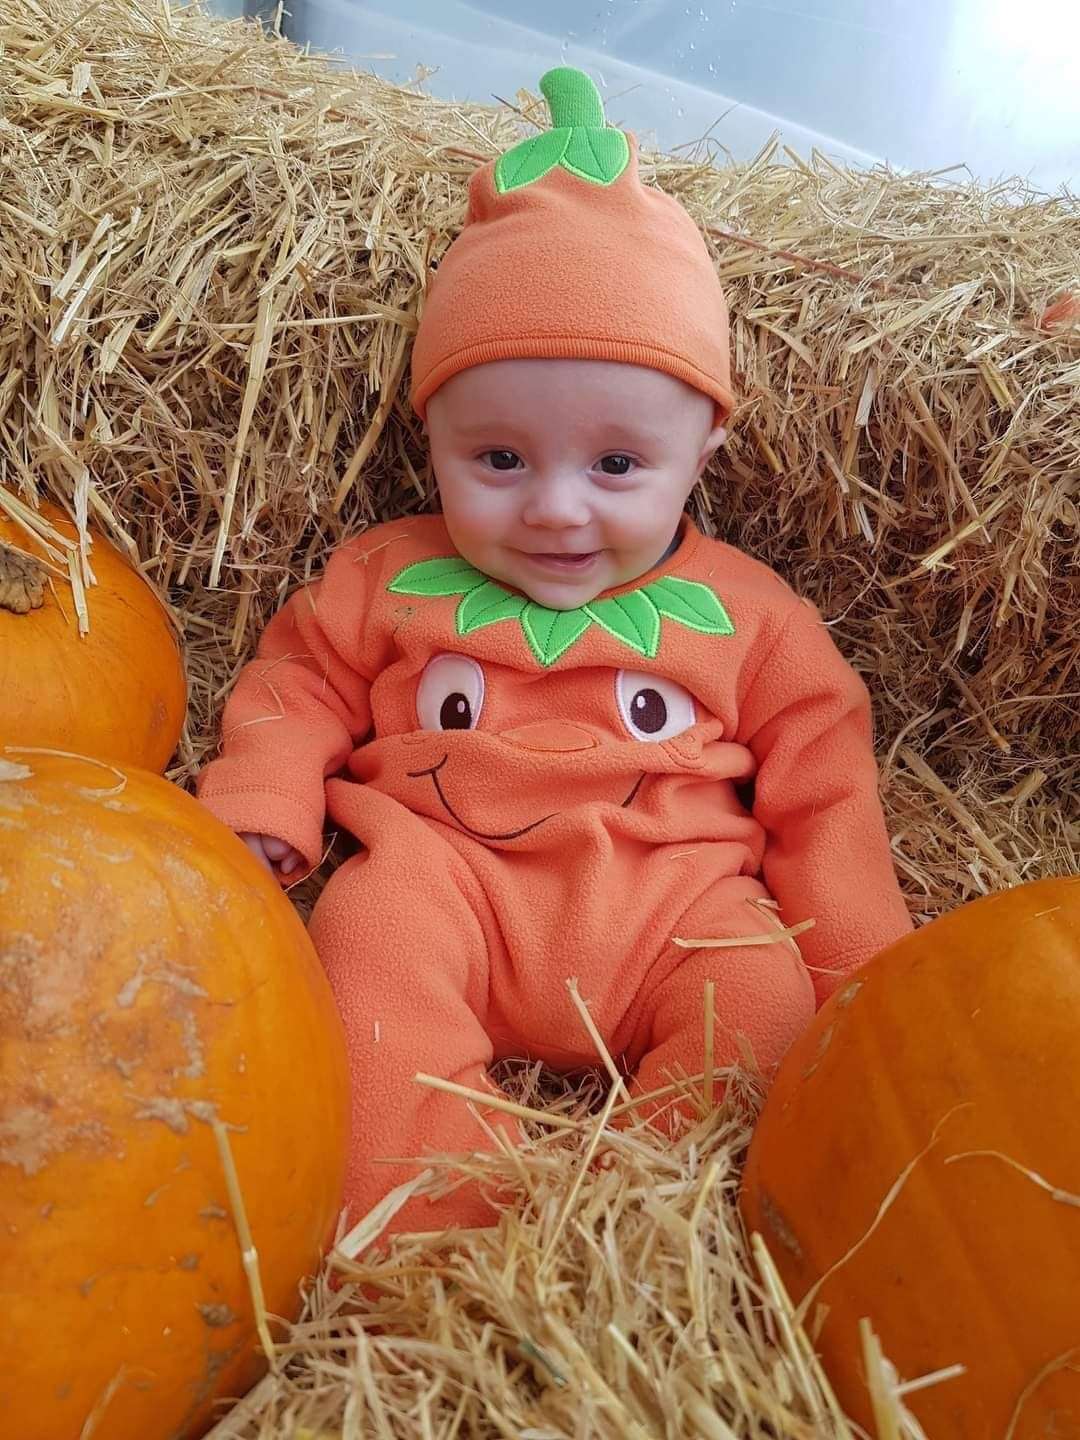 Jade Mackenzie sent in a picture of her little cute pumpkin in a haysack